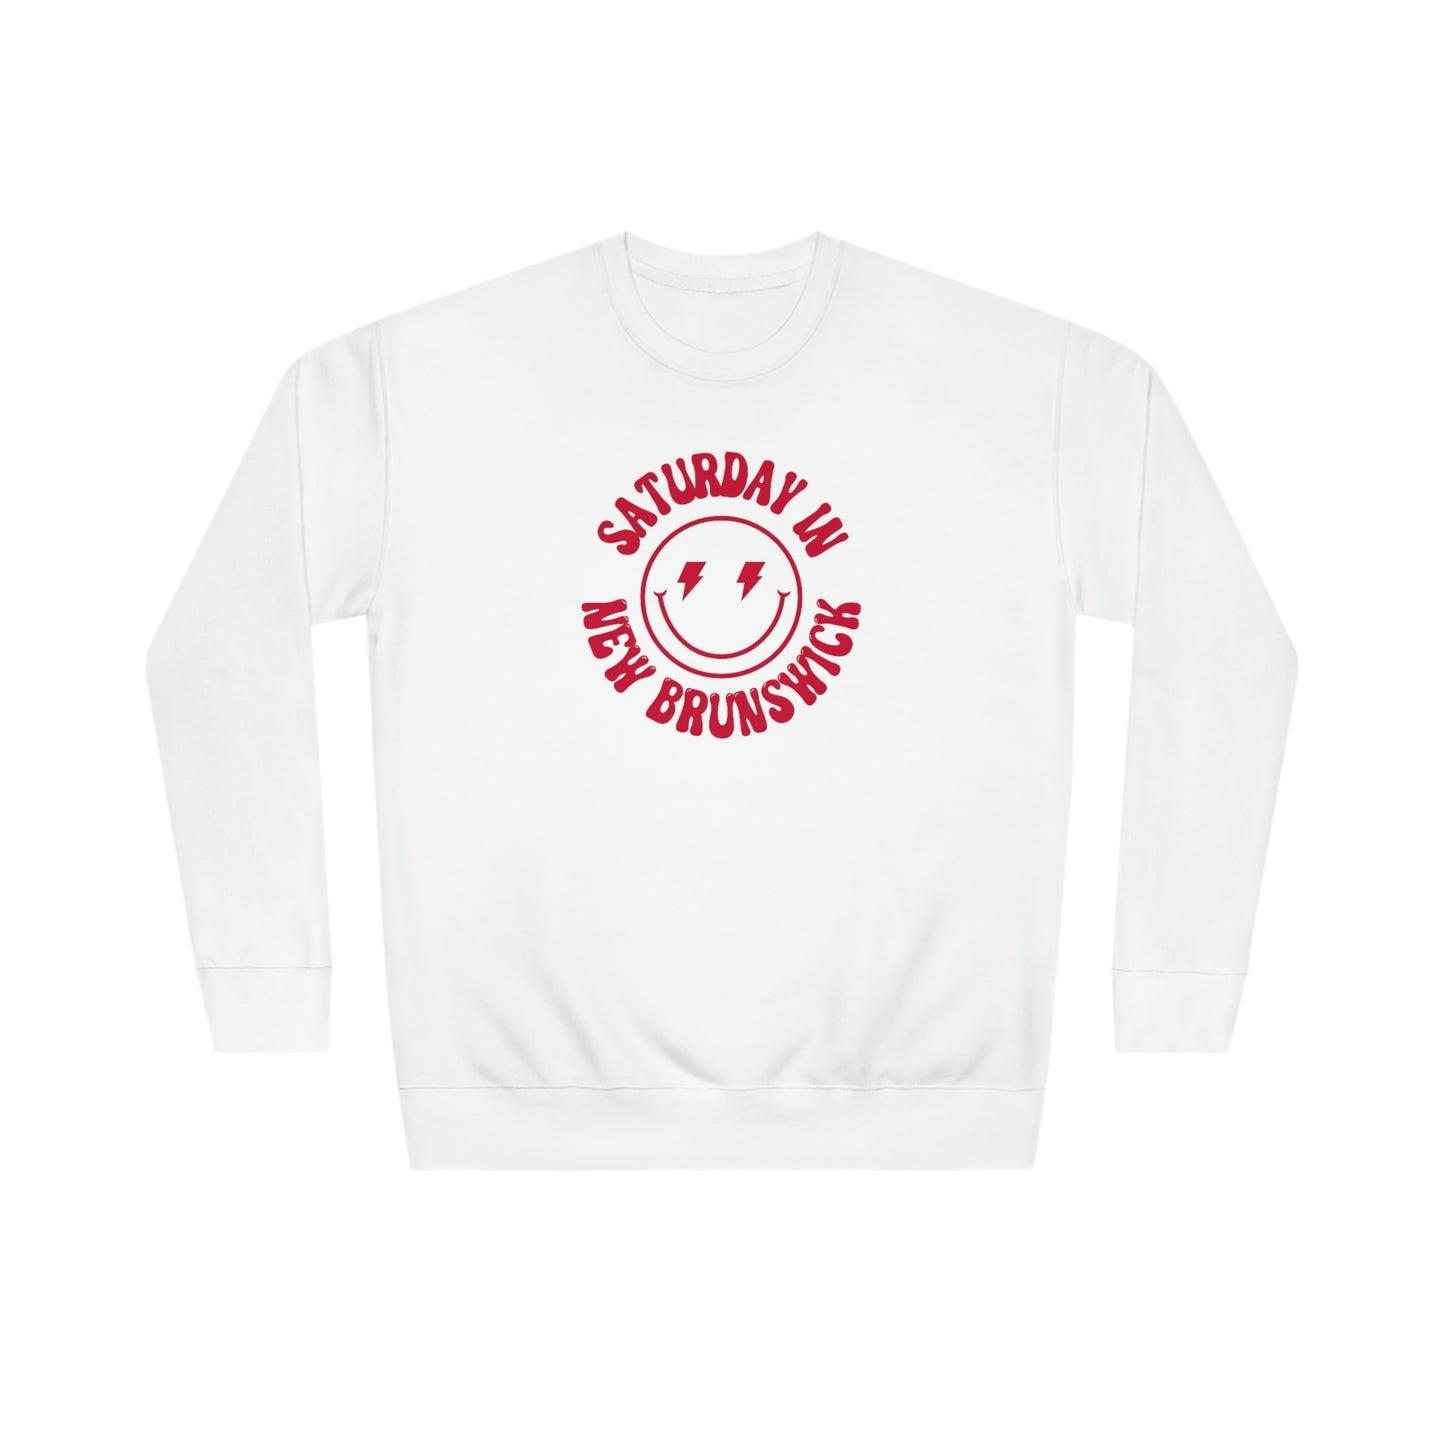 Smiley Rutgers Crew Sweatshirt - GG